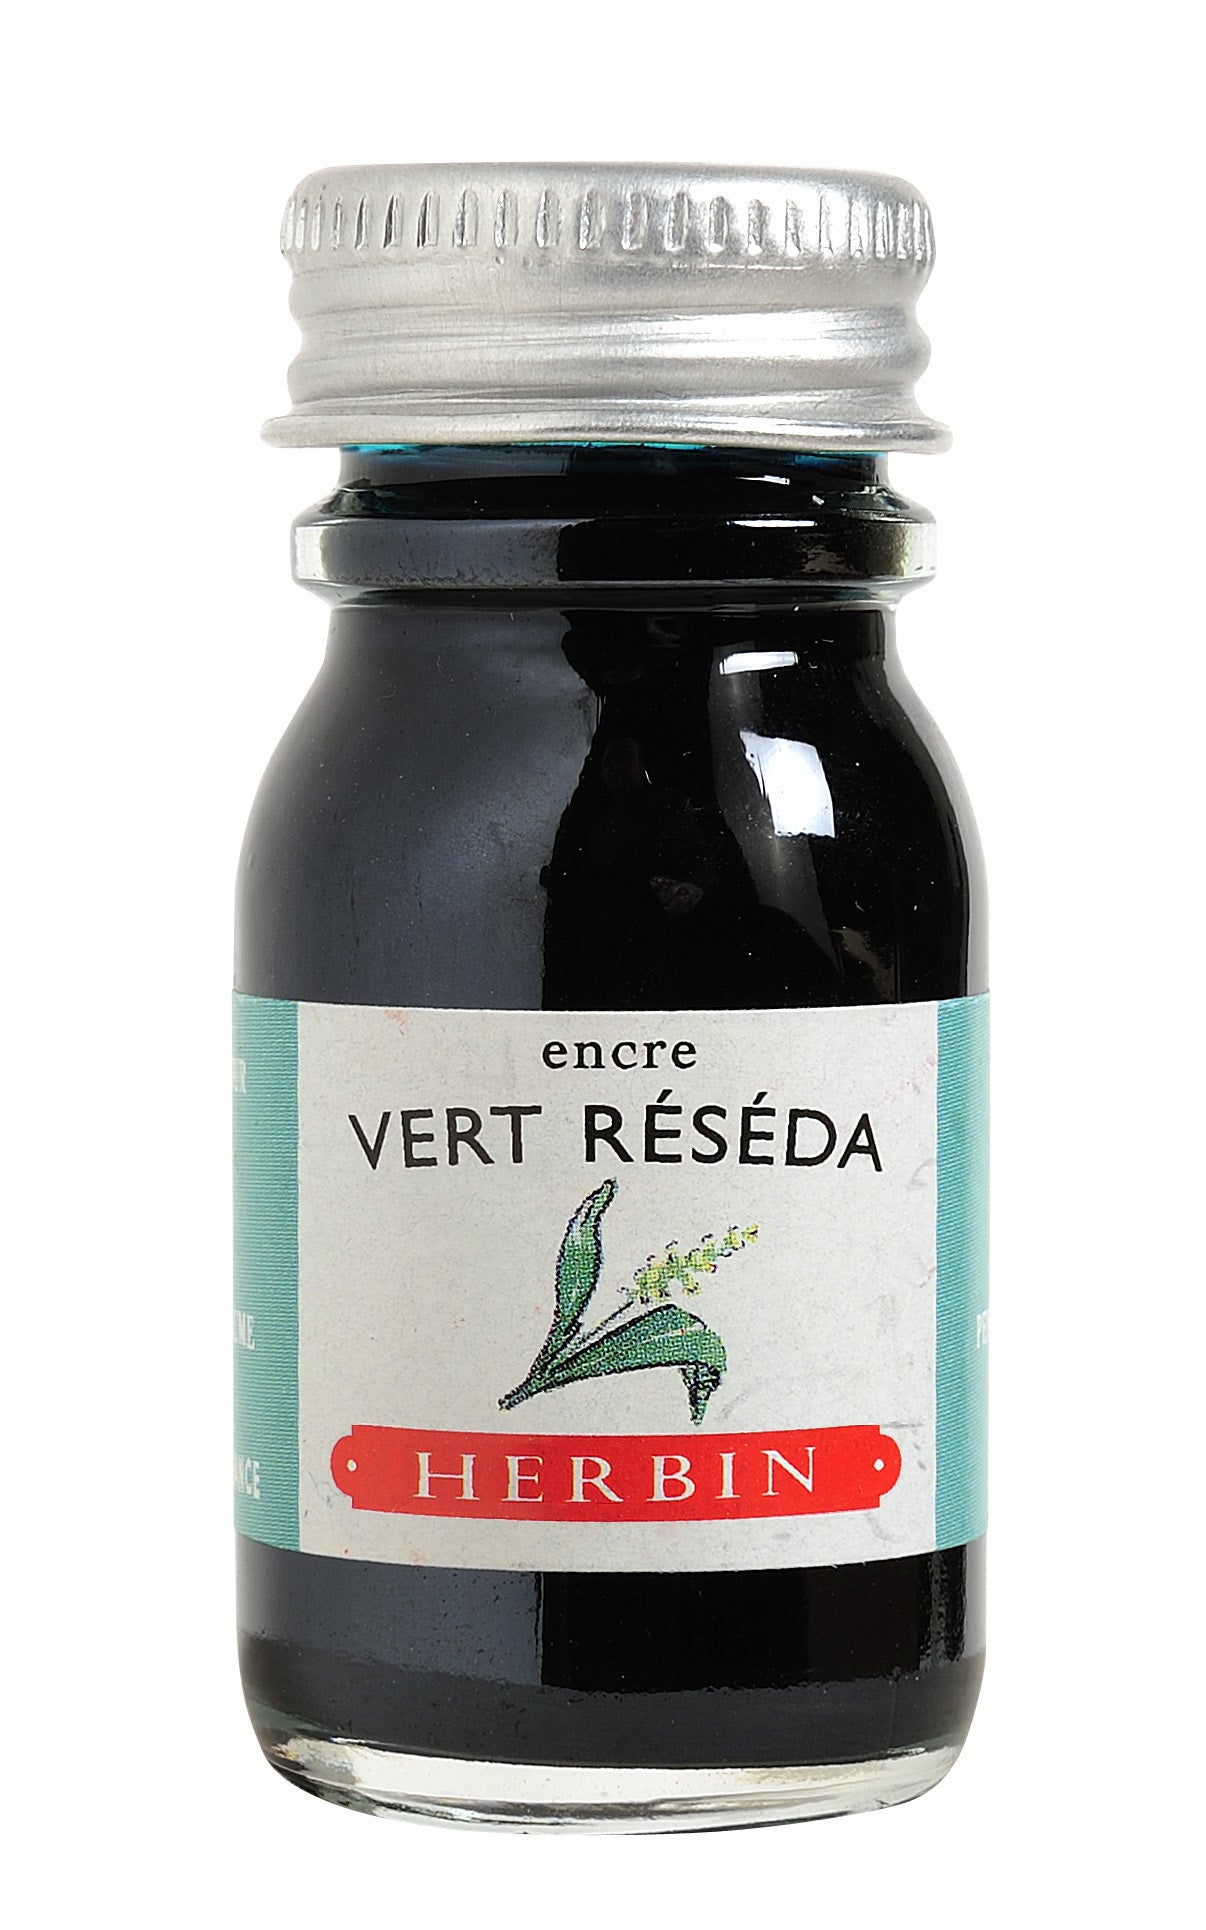 Herbin - Vert reseda (resedagrün), 10 ml